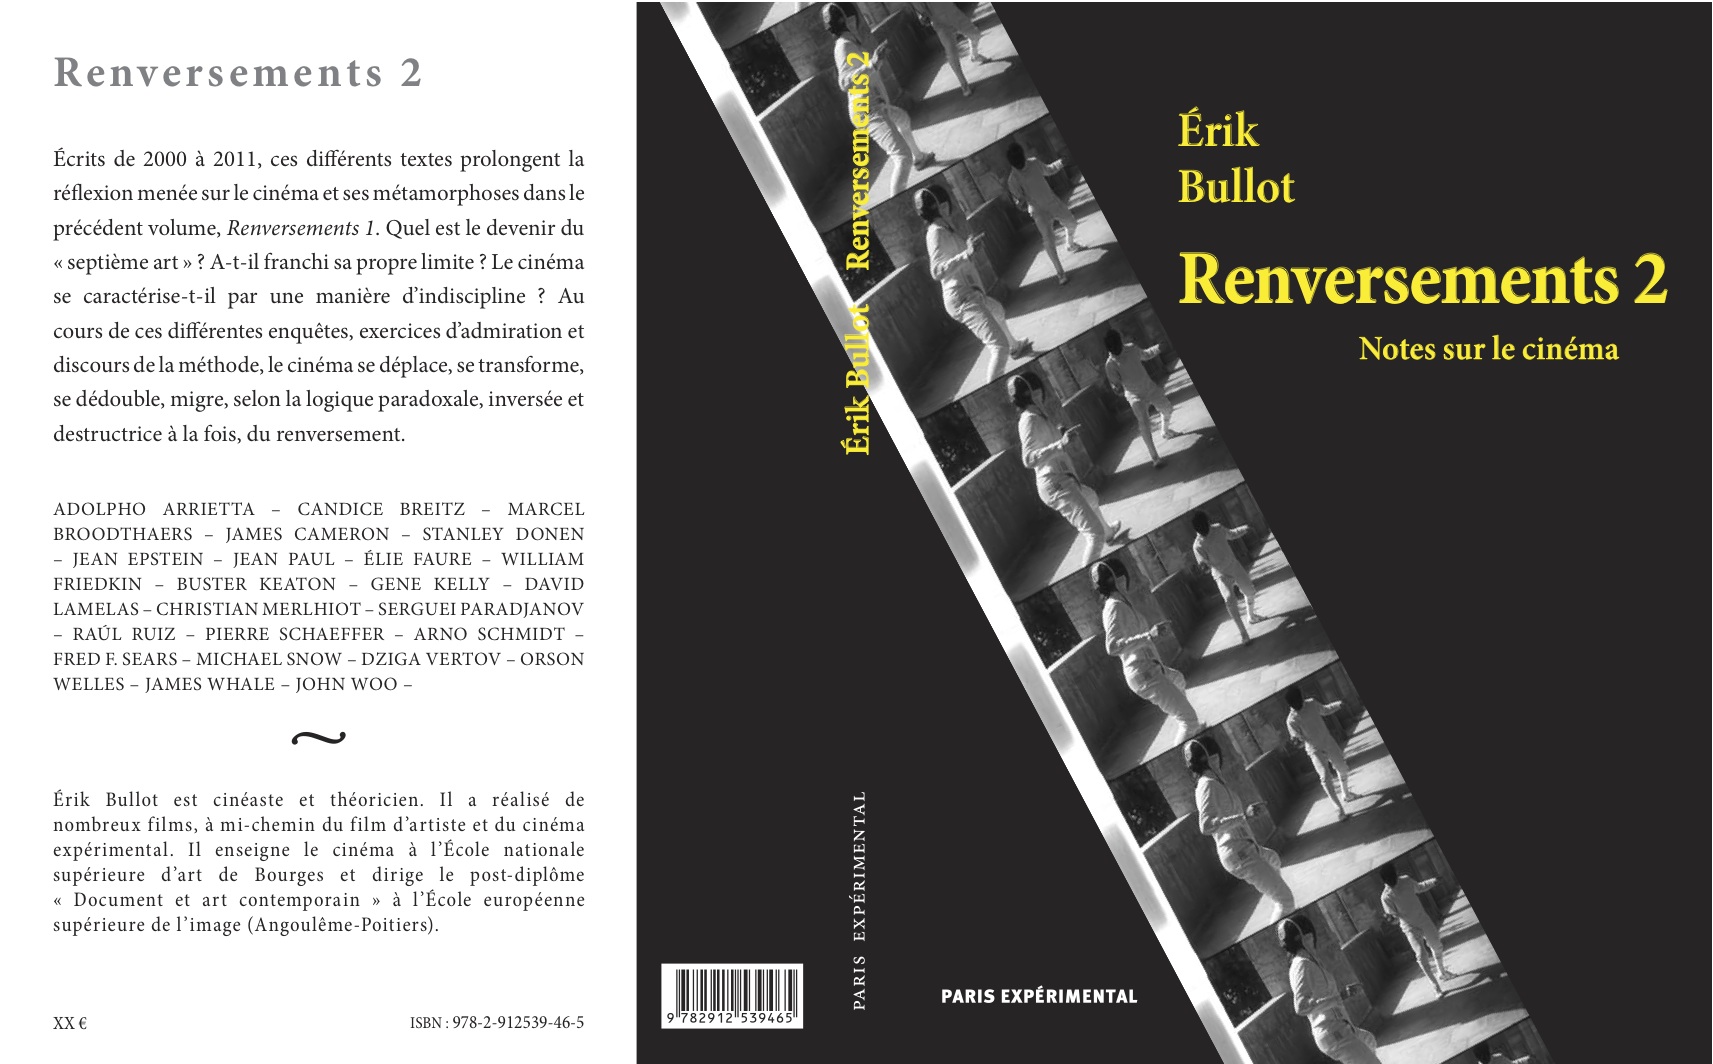 EBullot_renversements2_couv_planche_5decembre2012